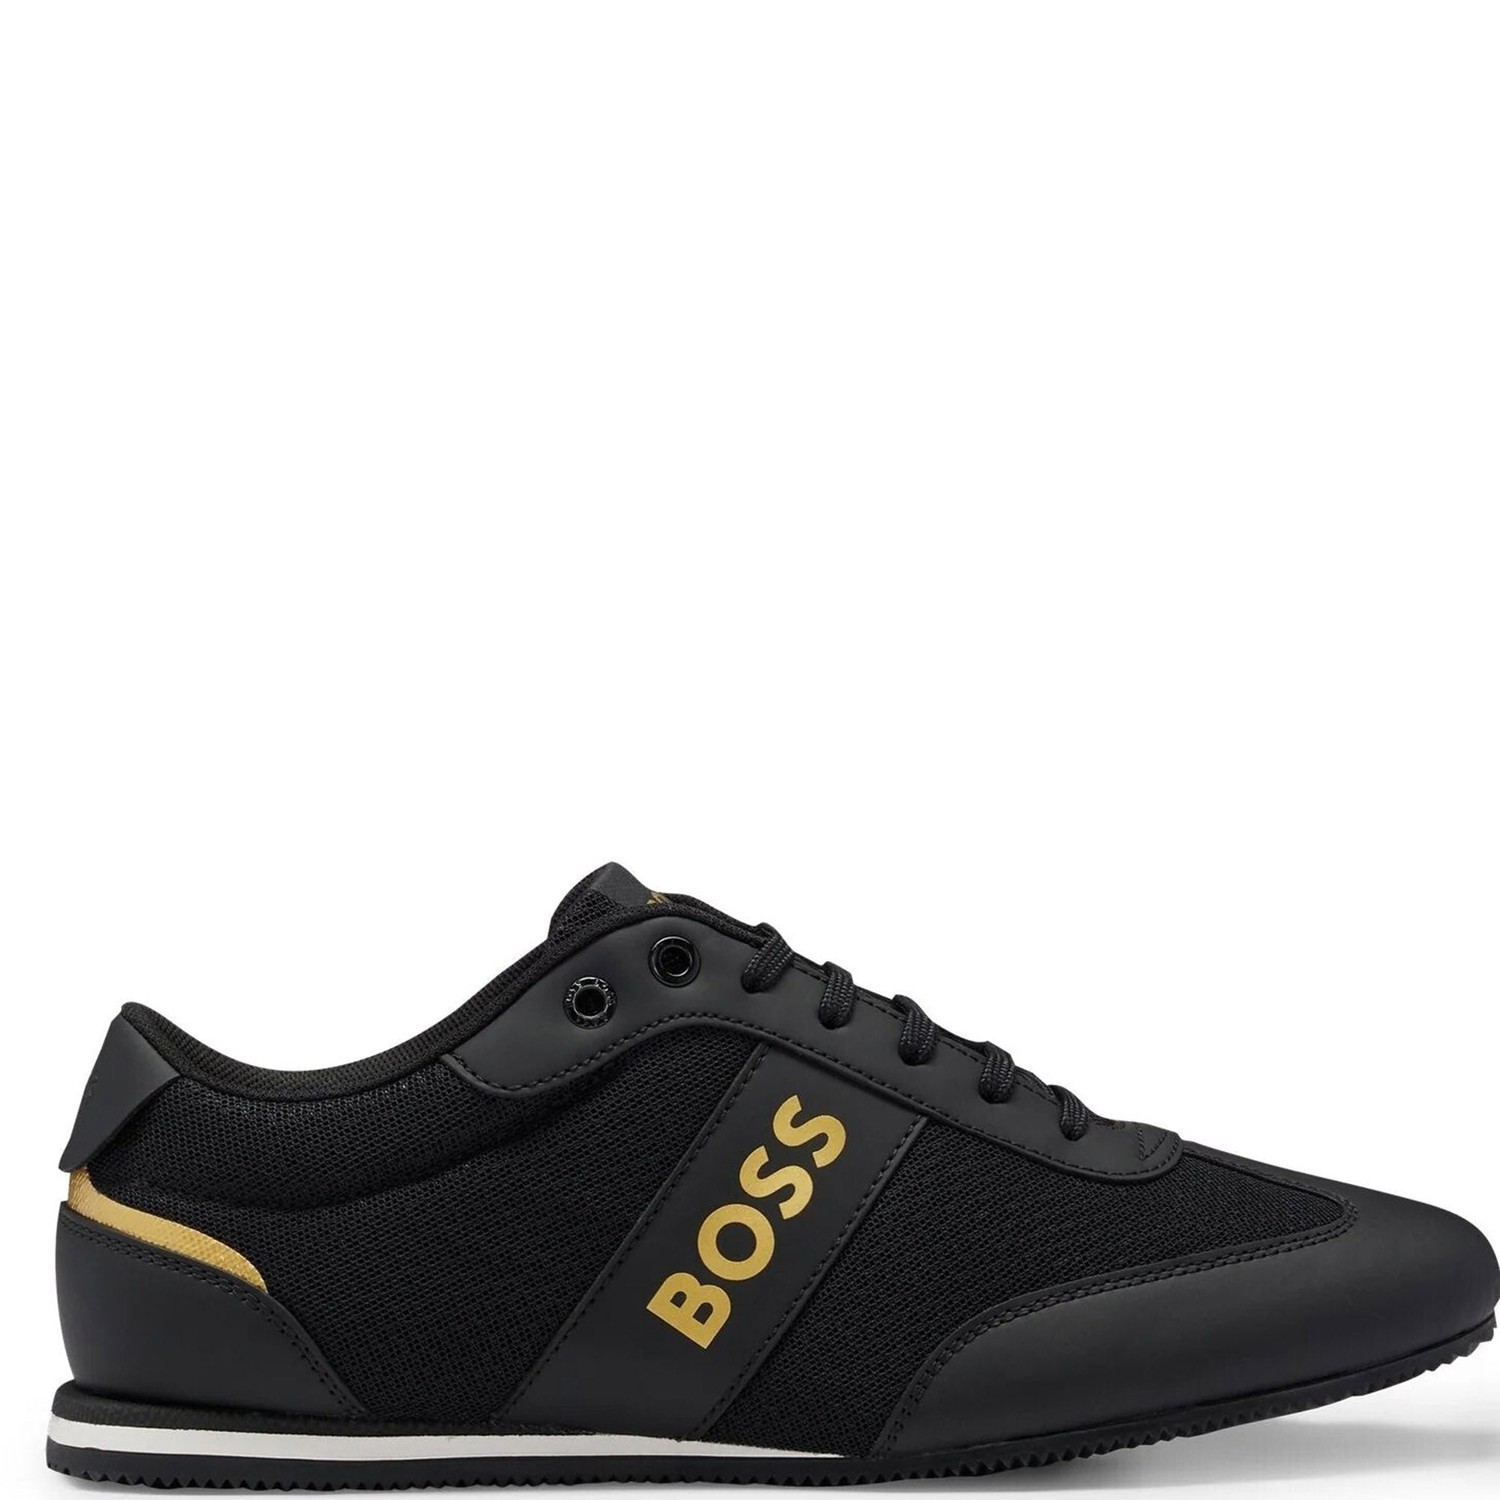 Hugo Boss Mens Rusham Low Sneakers Black UK 7